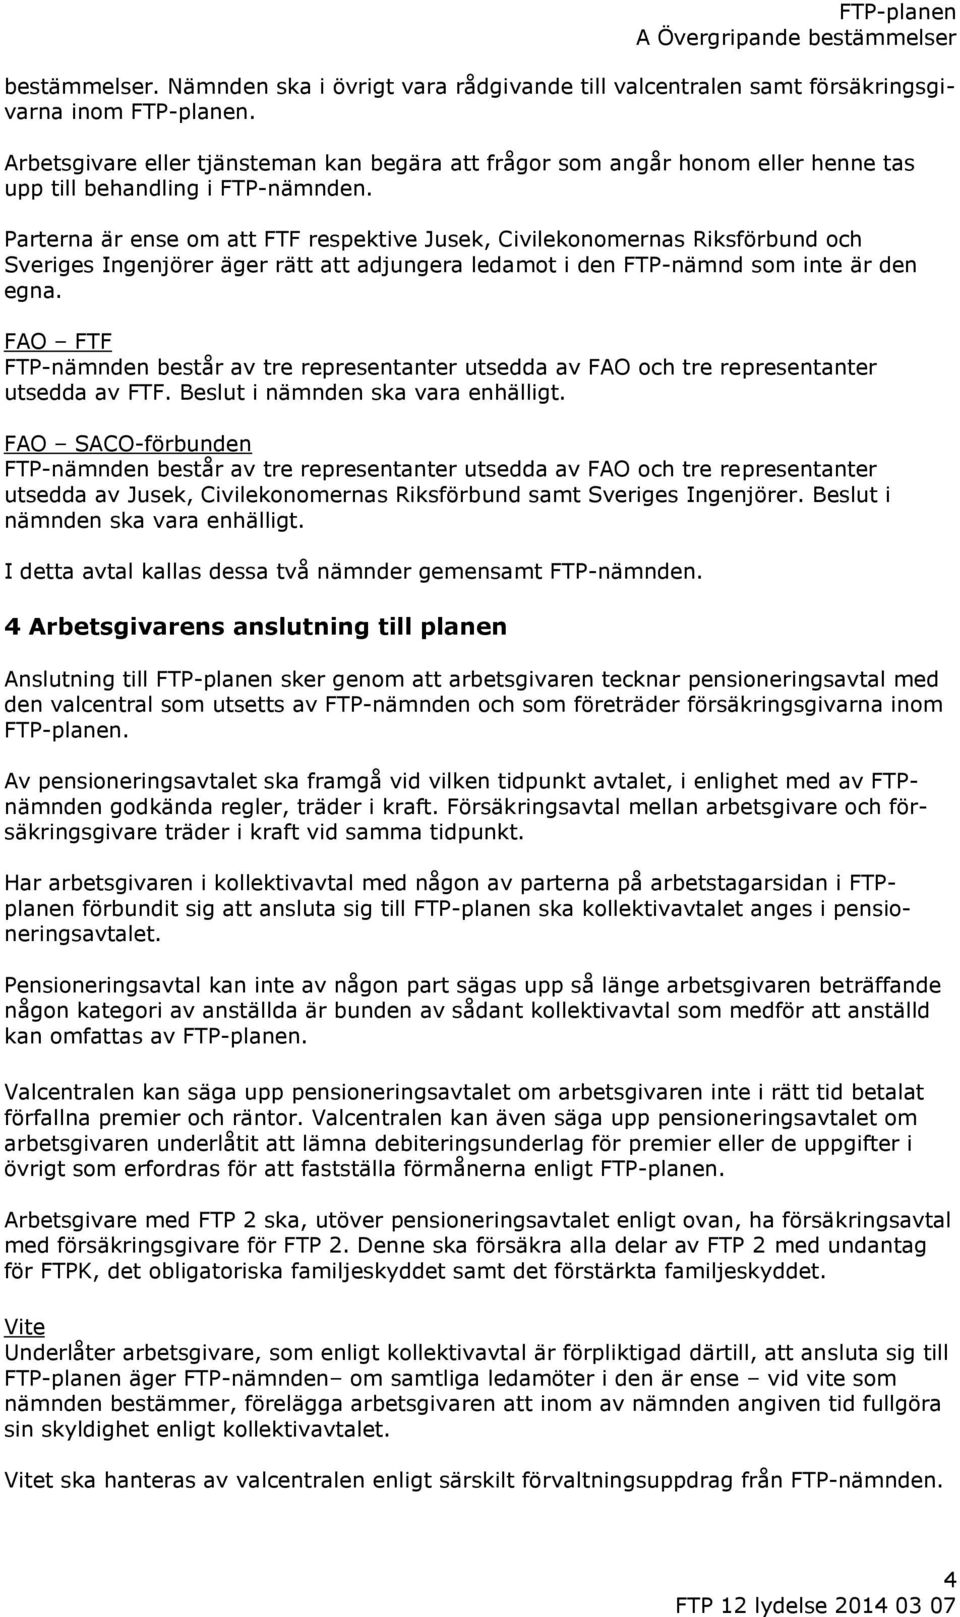 Parterna är ense om att FTF respektive Jusek, Civilekonomernas Riksförbund och Sveriges Ingenjörer äger rätt att adjungera ledamot i den FTP-nämnd som inte är den egna.